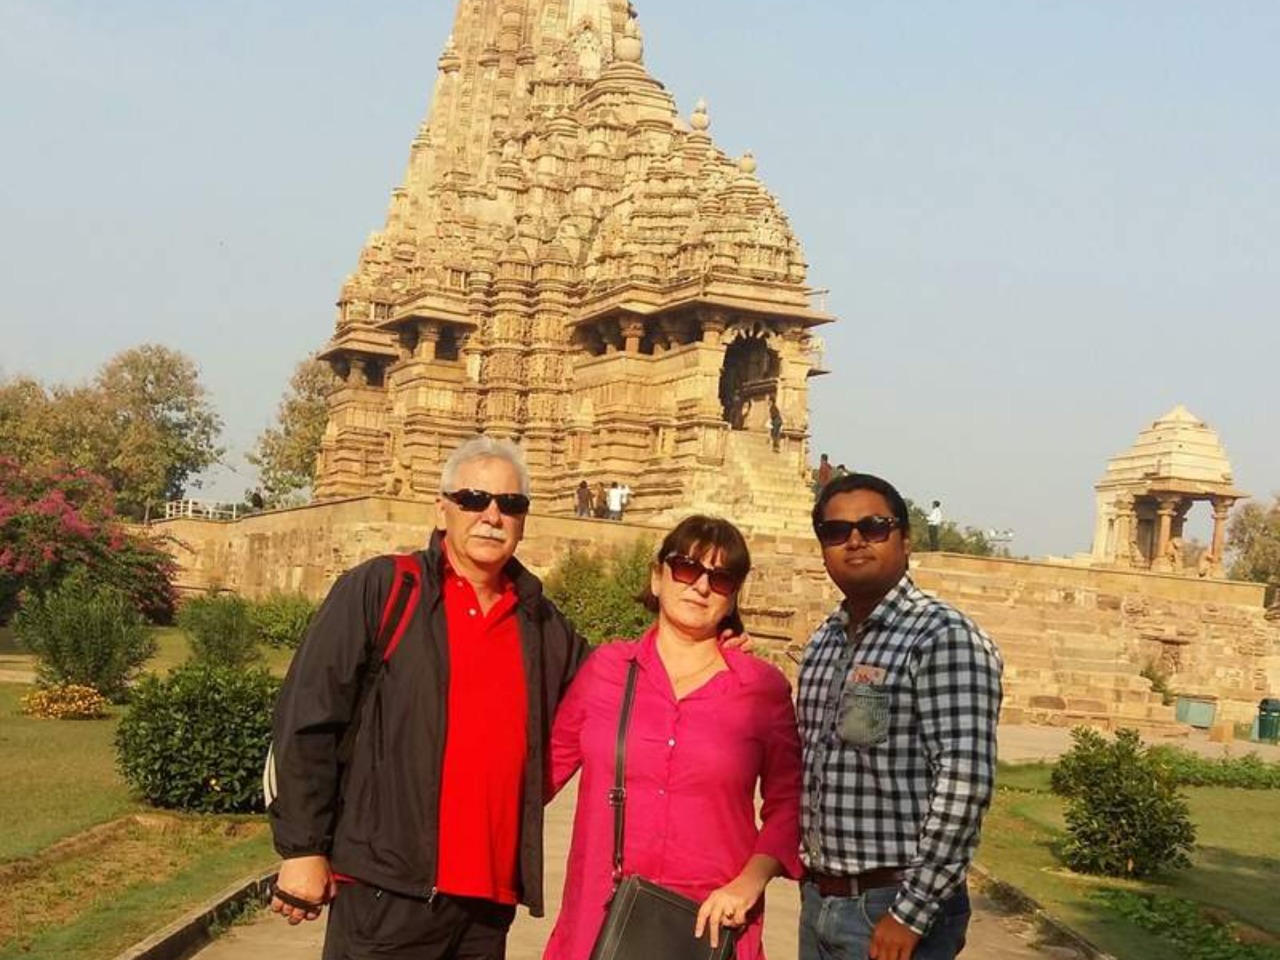 Автотур “Золотой треугольник” + храм Камасутры  | Цена 700$, отзывы, описание экскурсии